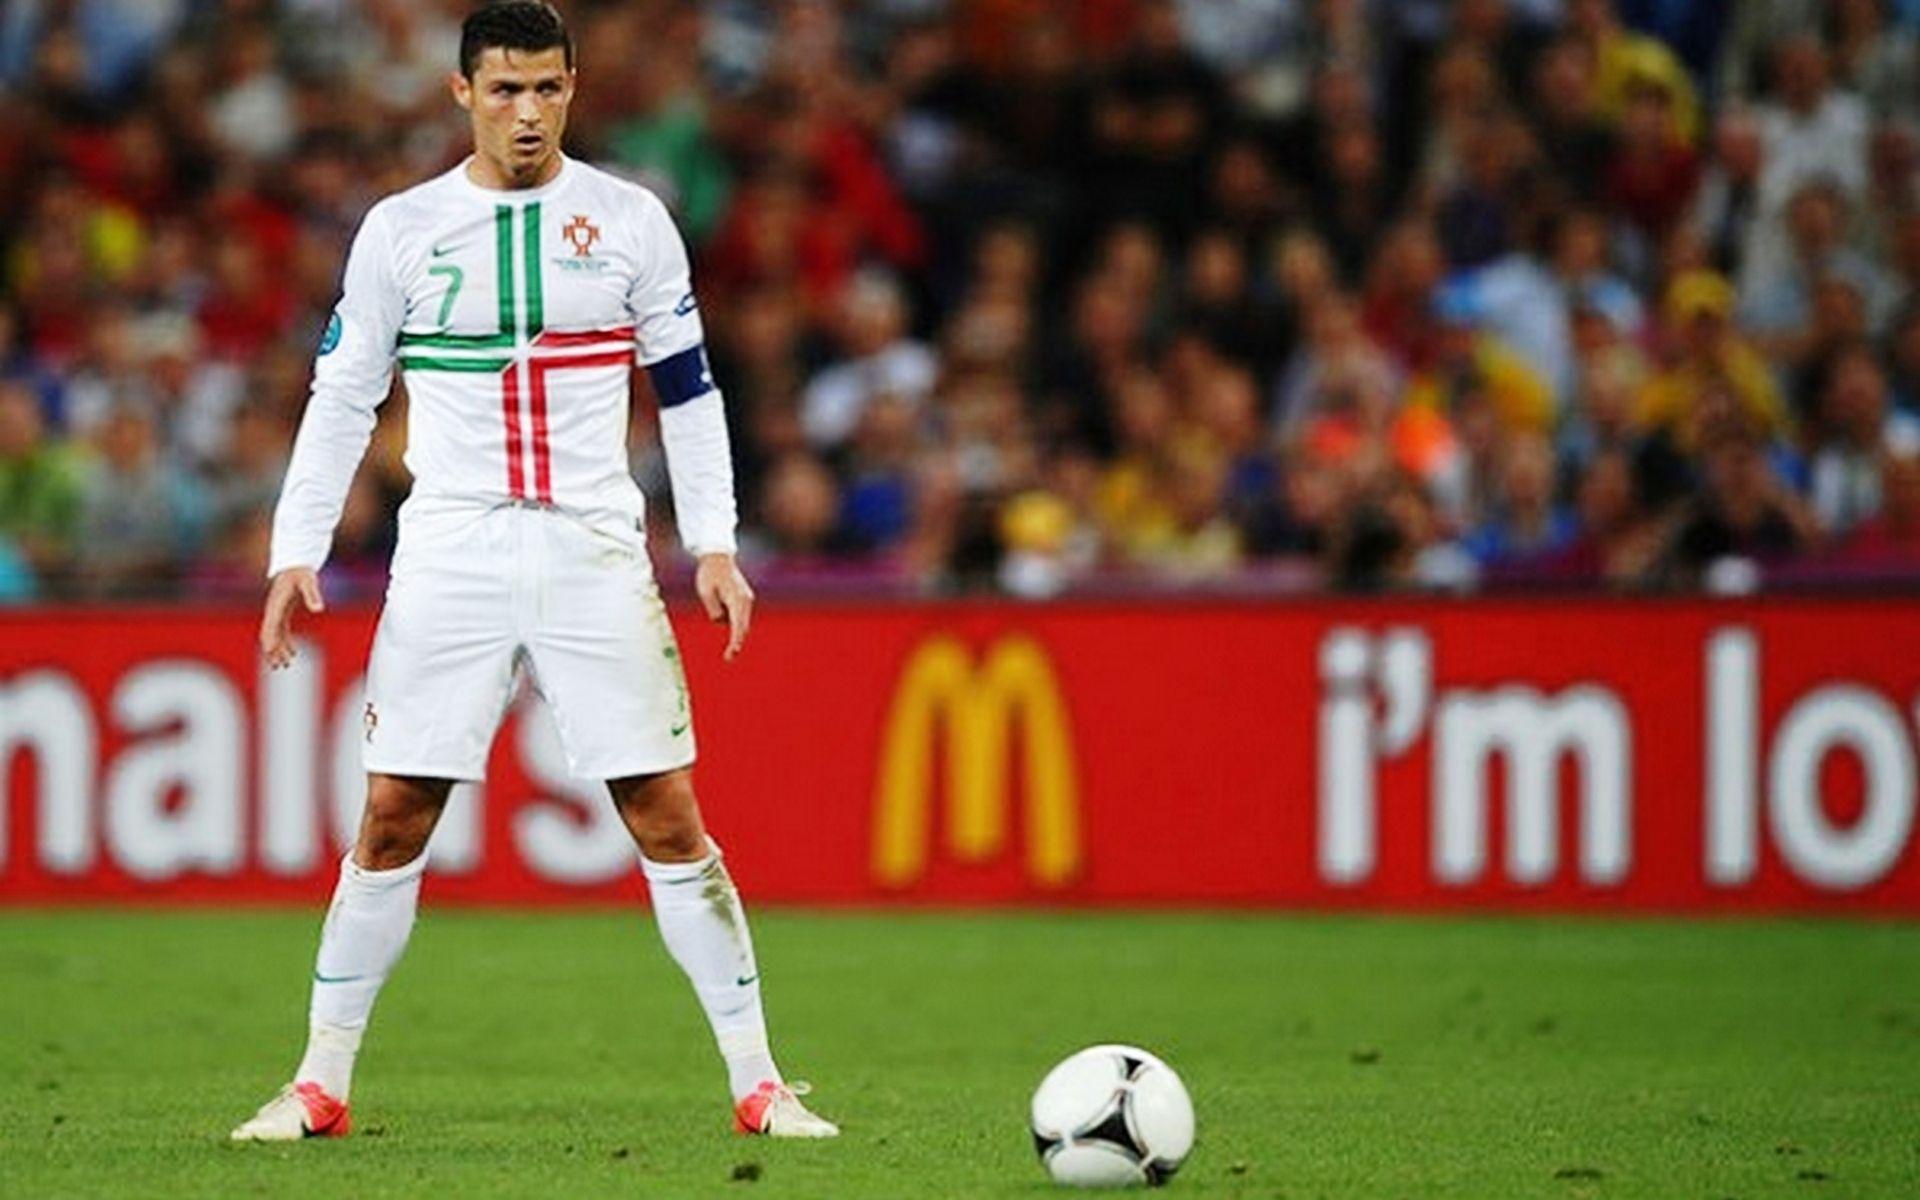 Ronaldo Free Kick Wallpaper Image #P7A. Awesomeness